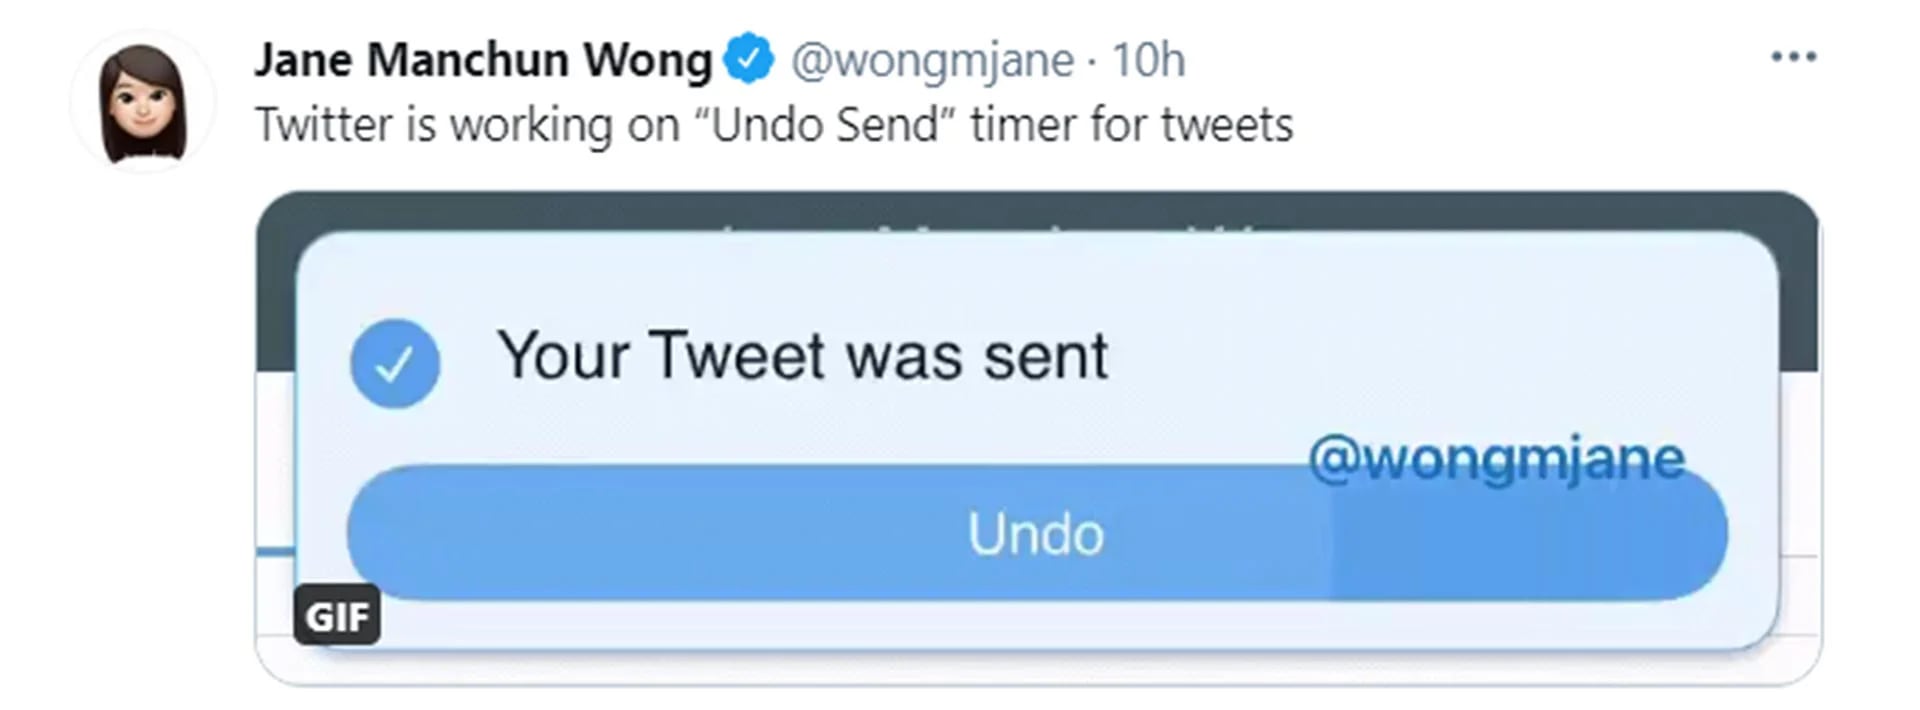 La ingeniera Jane Manchun Wong compartió su hallazgo sobre un nuevo proyecto de Twitter para deshacer el envio de un tuit (Twitter: @wongmjane)